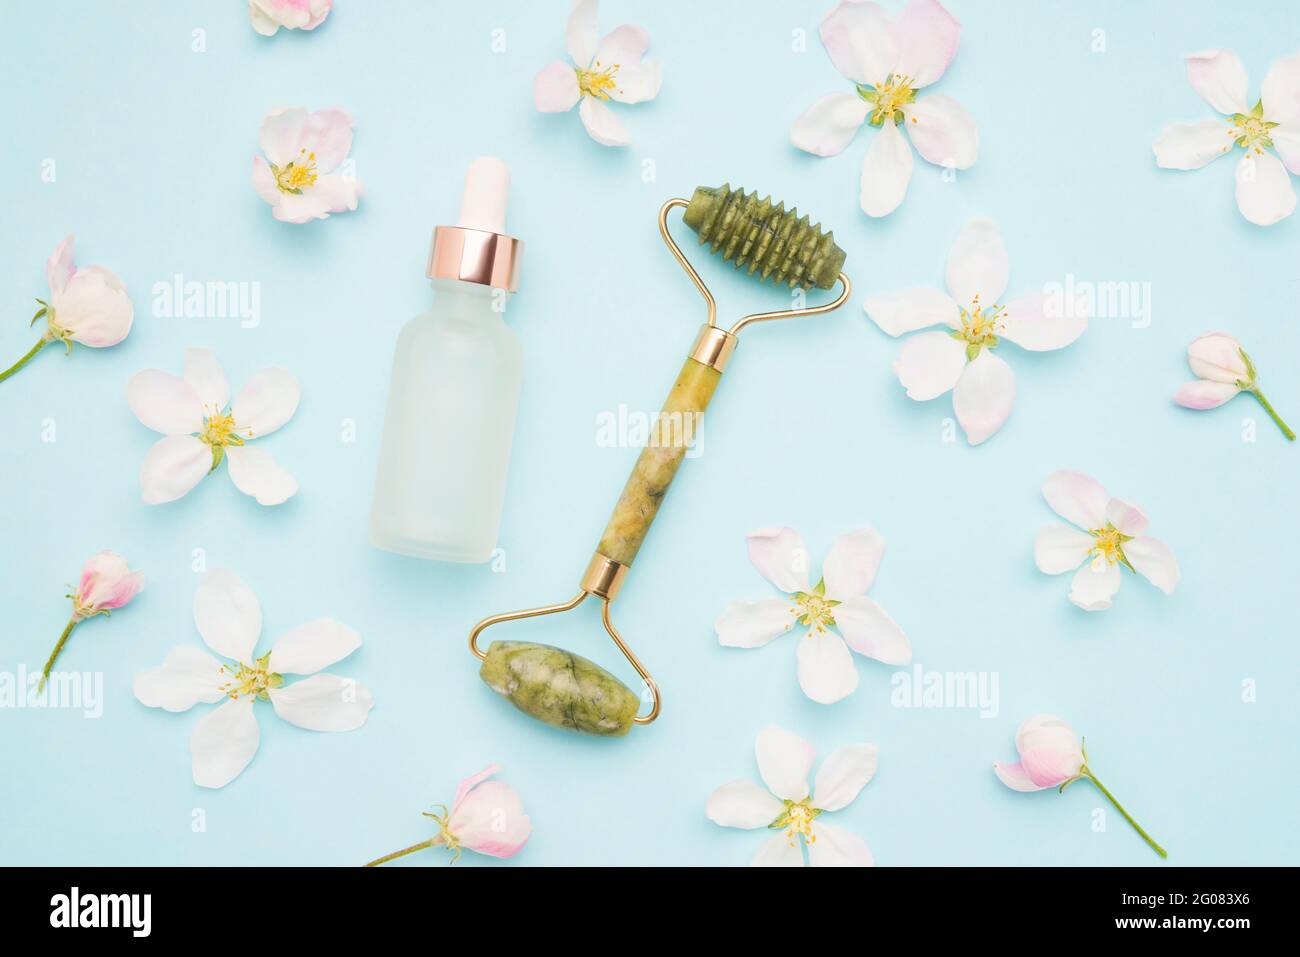 Rouleau de Jade pour le massage du visage, flacon compte-gouttes en verre à usage médical et cosmétique et fleurs d'arbre de pomme sur fond bleu clair. Concept SPA Banque D'Images